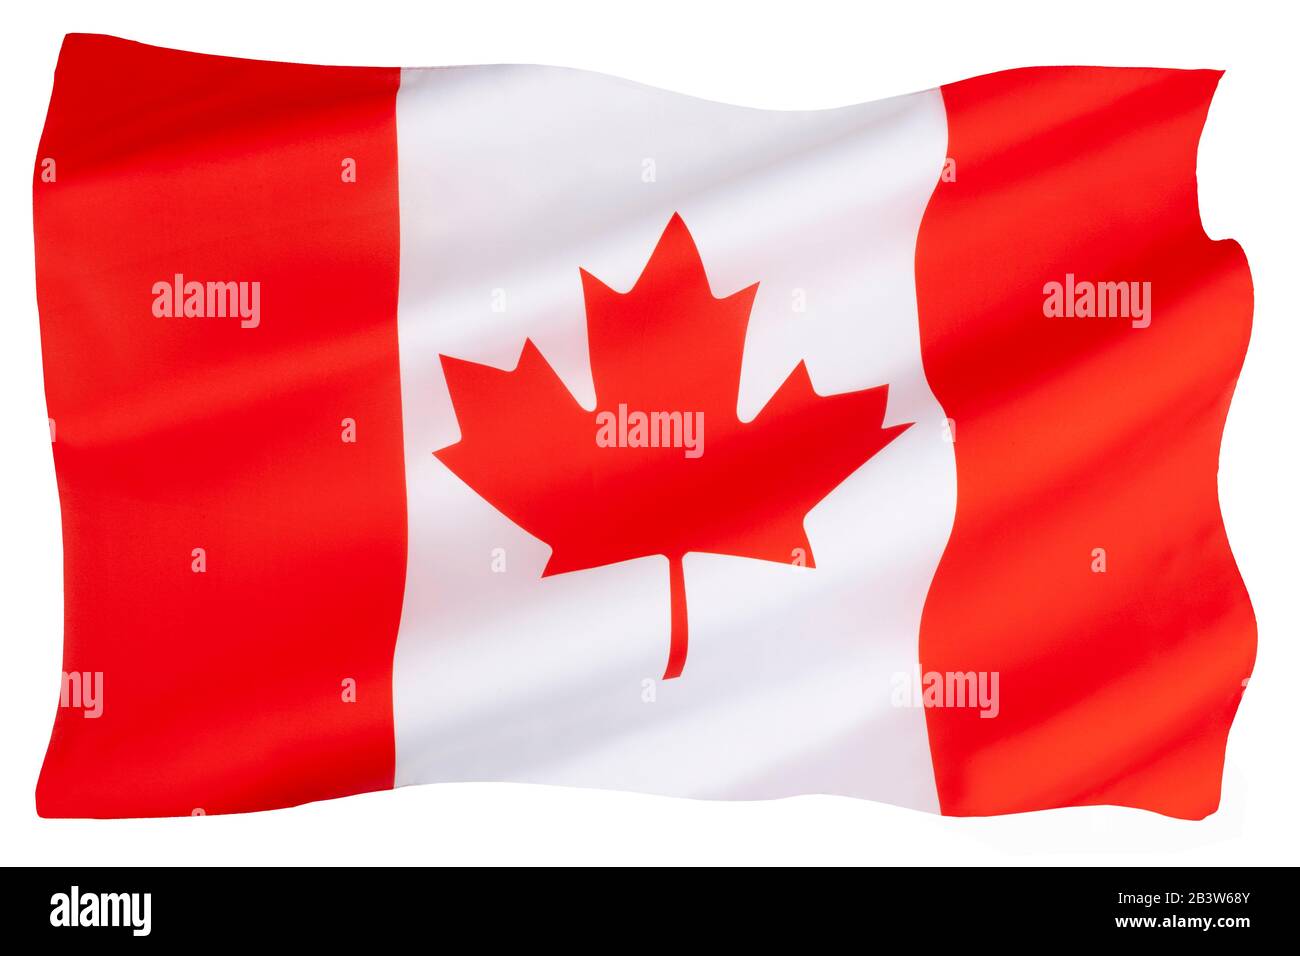 Le drapeau national du Canada (le drapeau du Canada), souvent appelé le drapeau canadien, ou officieusement la feuille d'érable. Banque D'Images